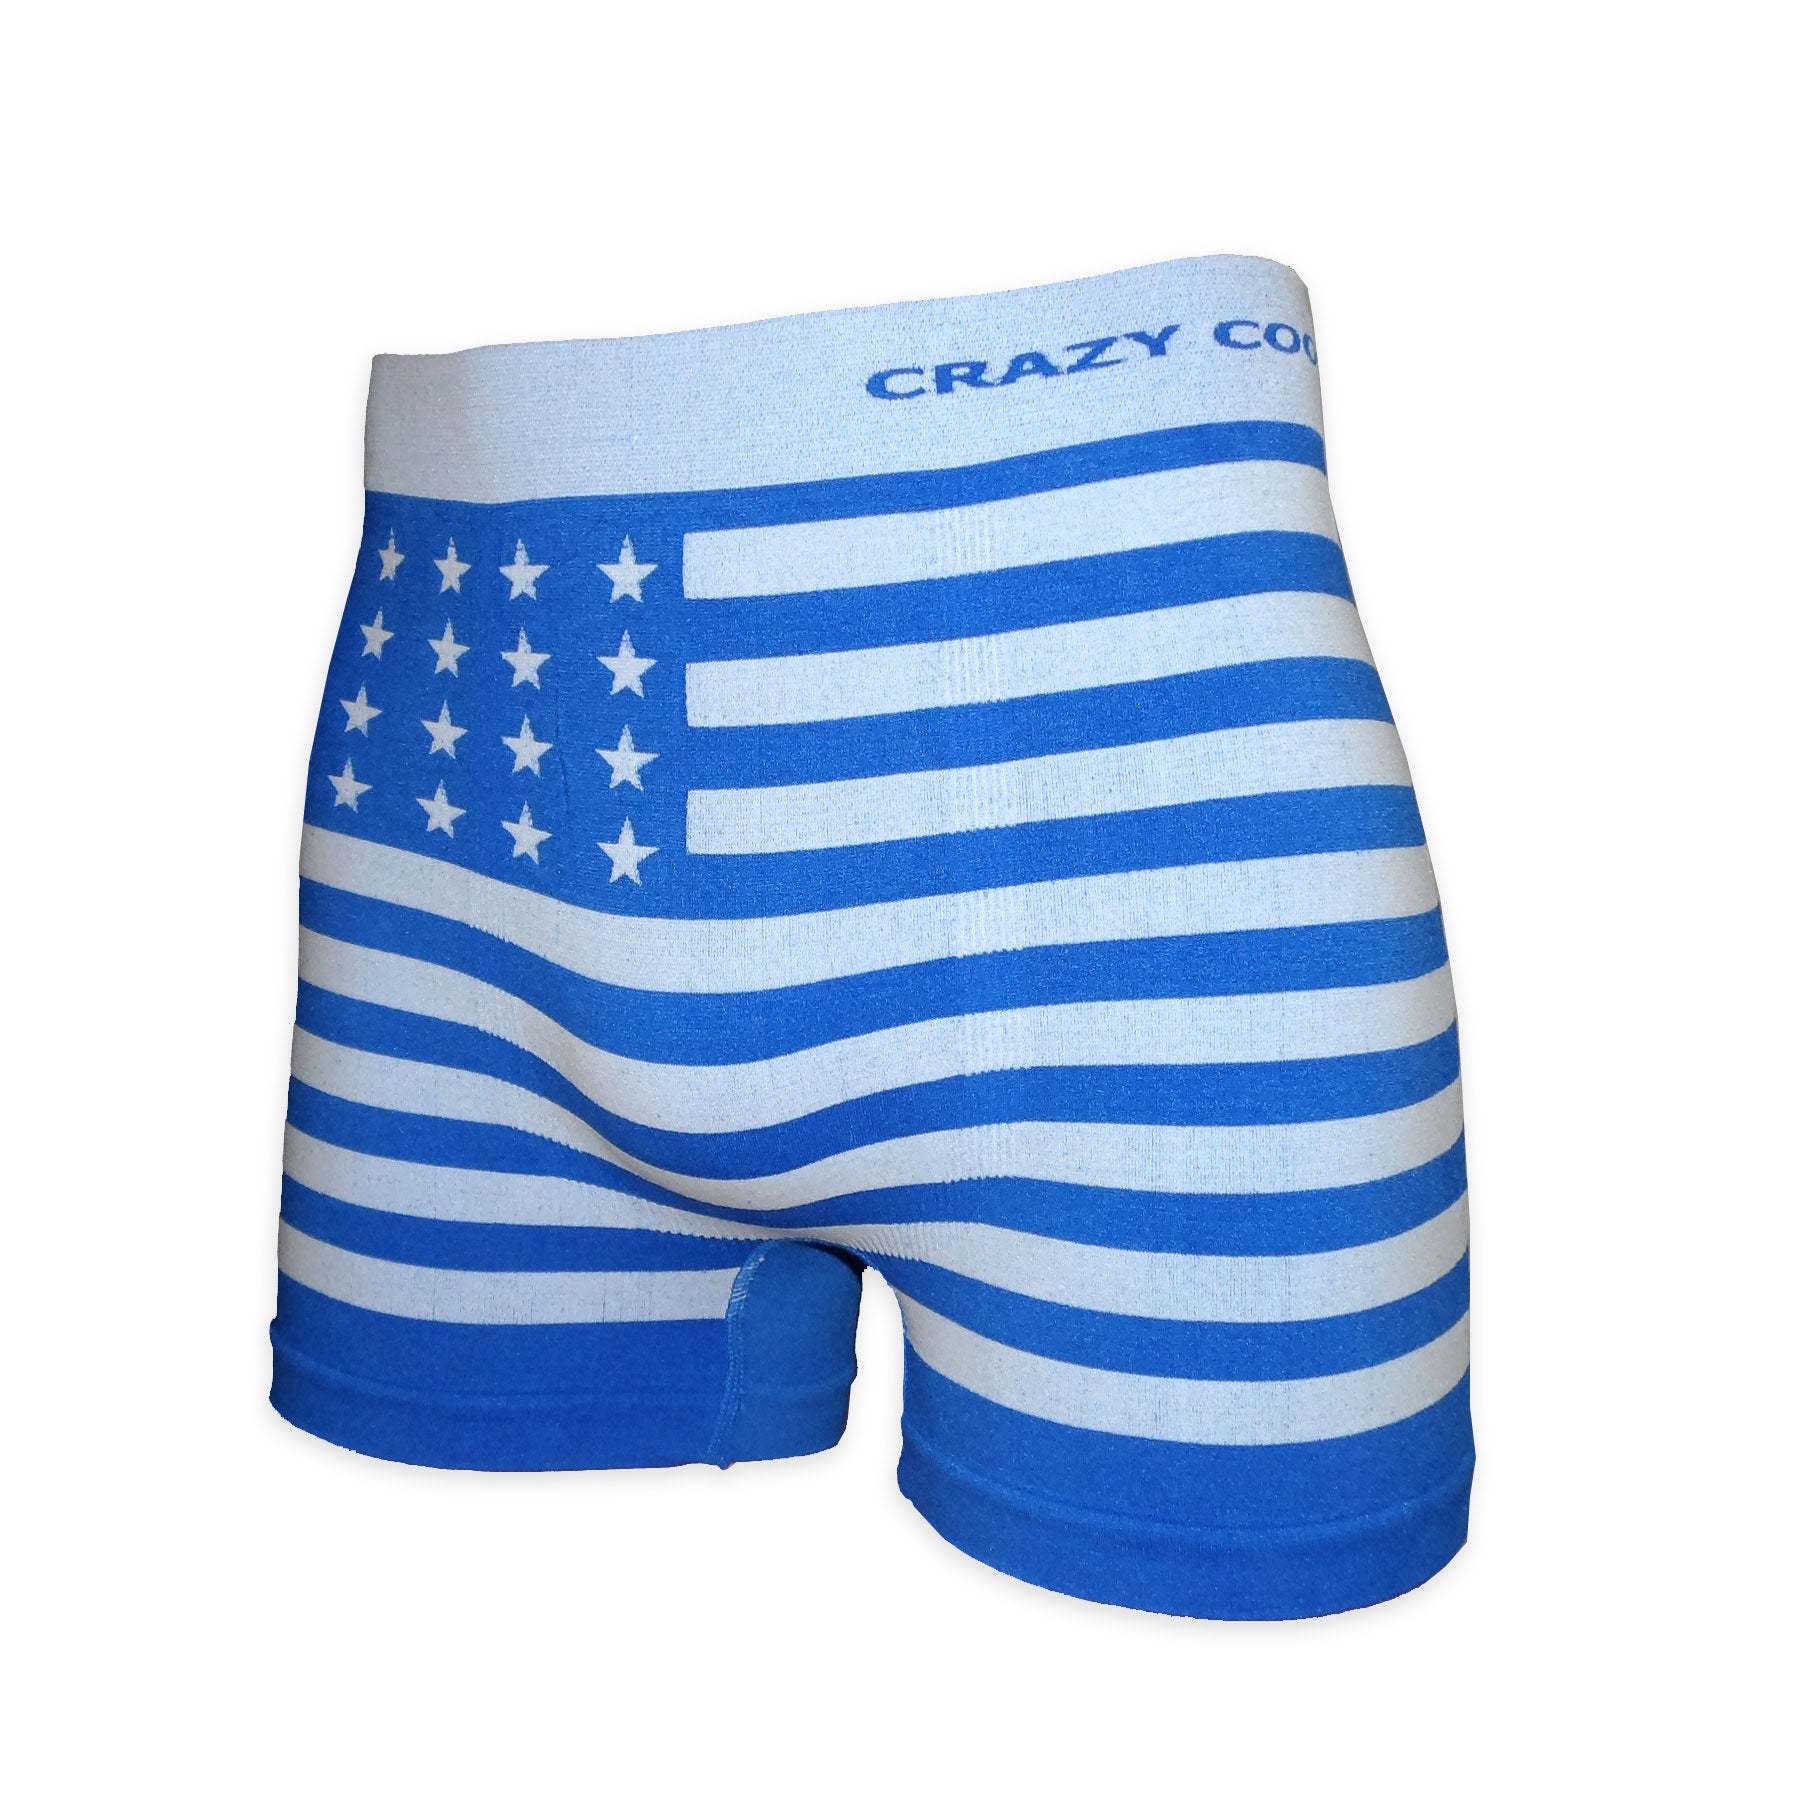 Crazy Cool Underwear Seamless Mens Boxer Briefs Underwear 6-Pack